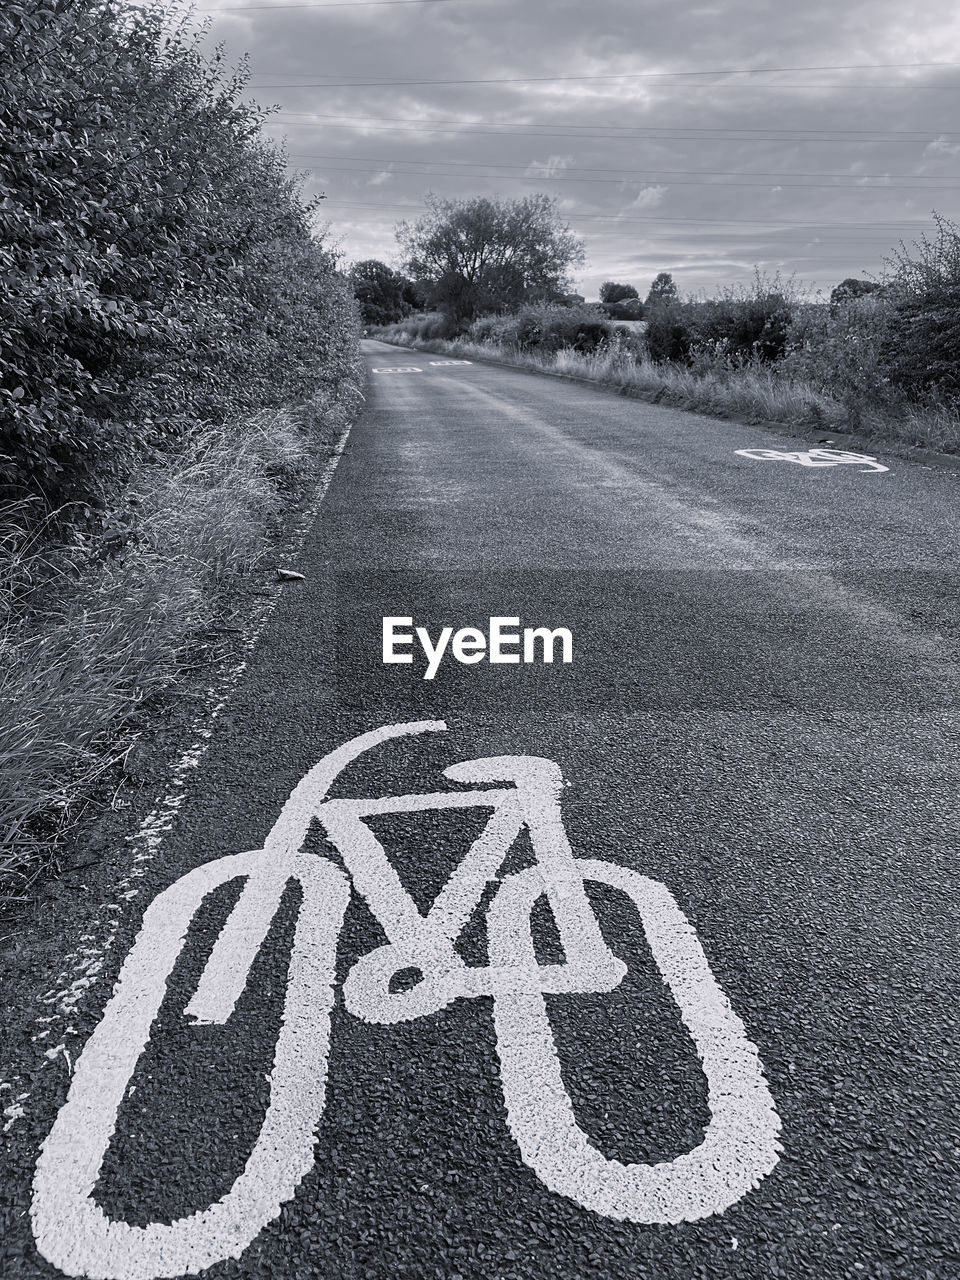 Cycle lane road markings